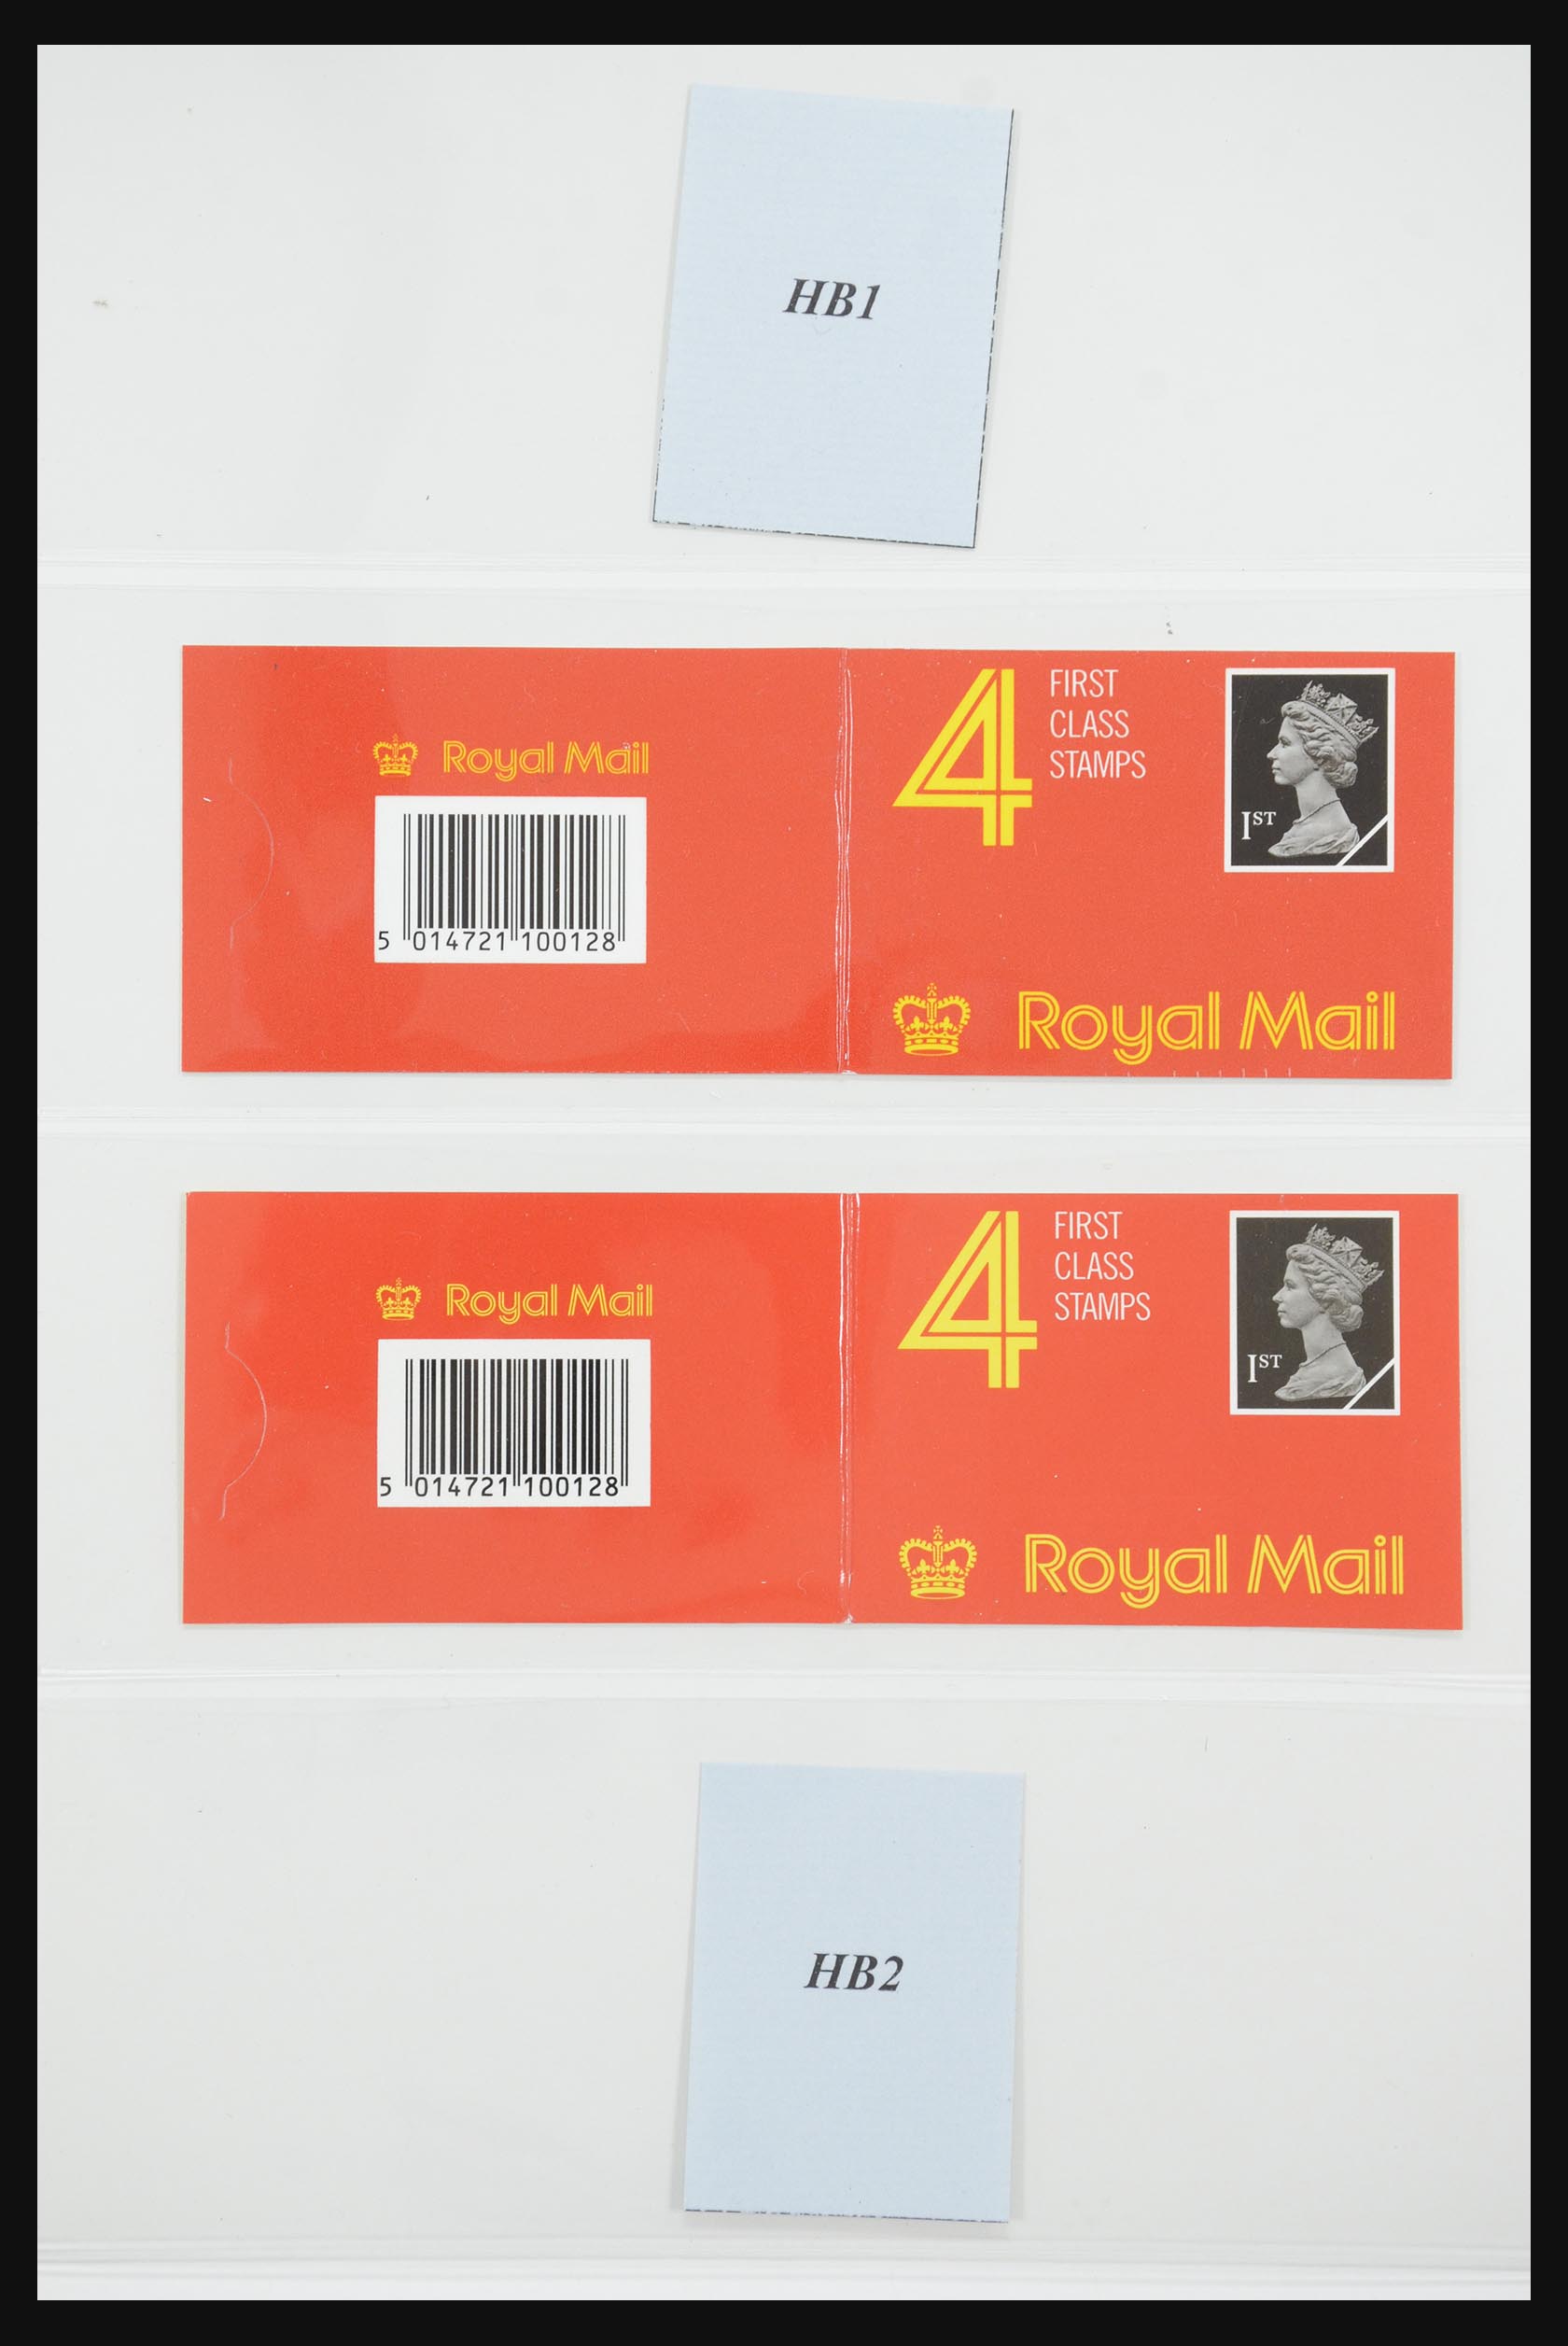 31960 021 - 31960 Engeland postzegelboekjes 1989-2000.